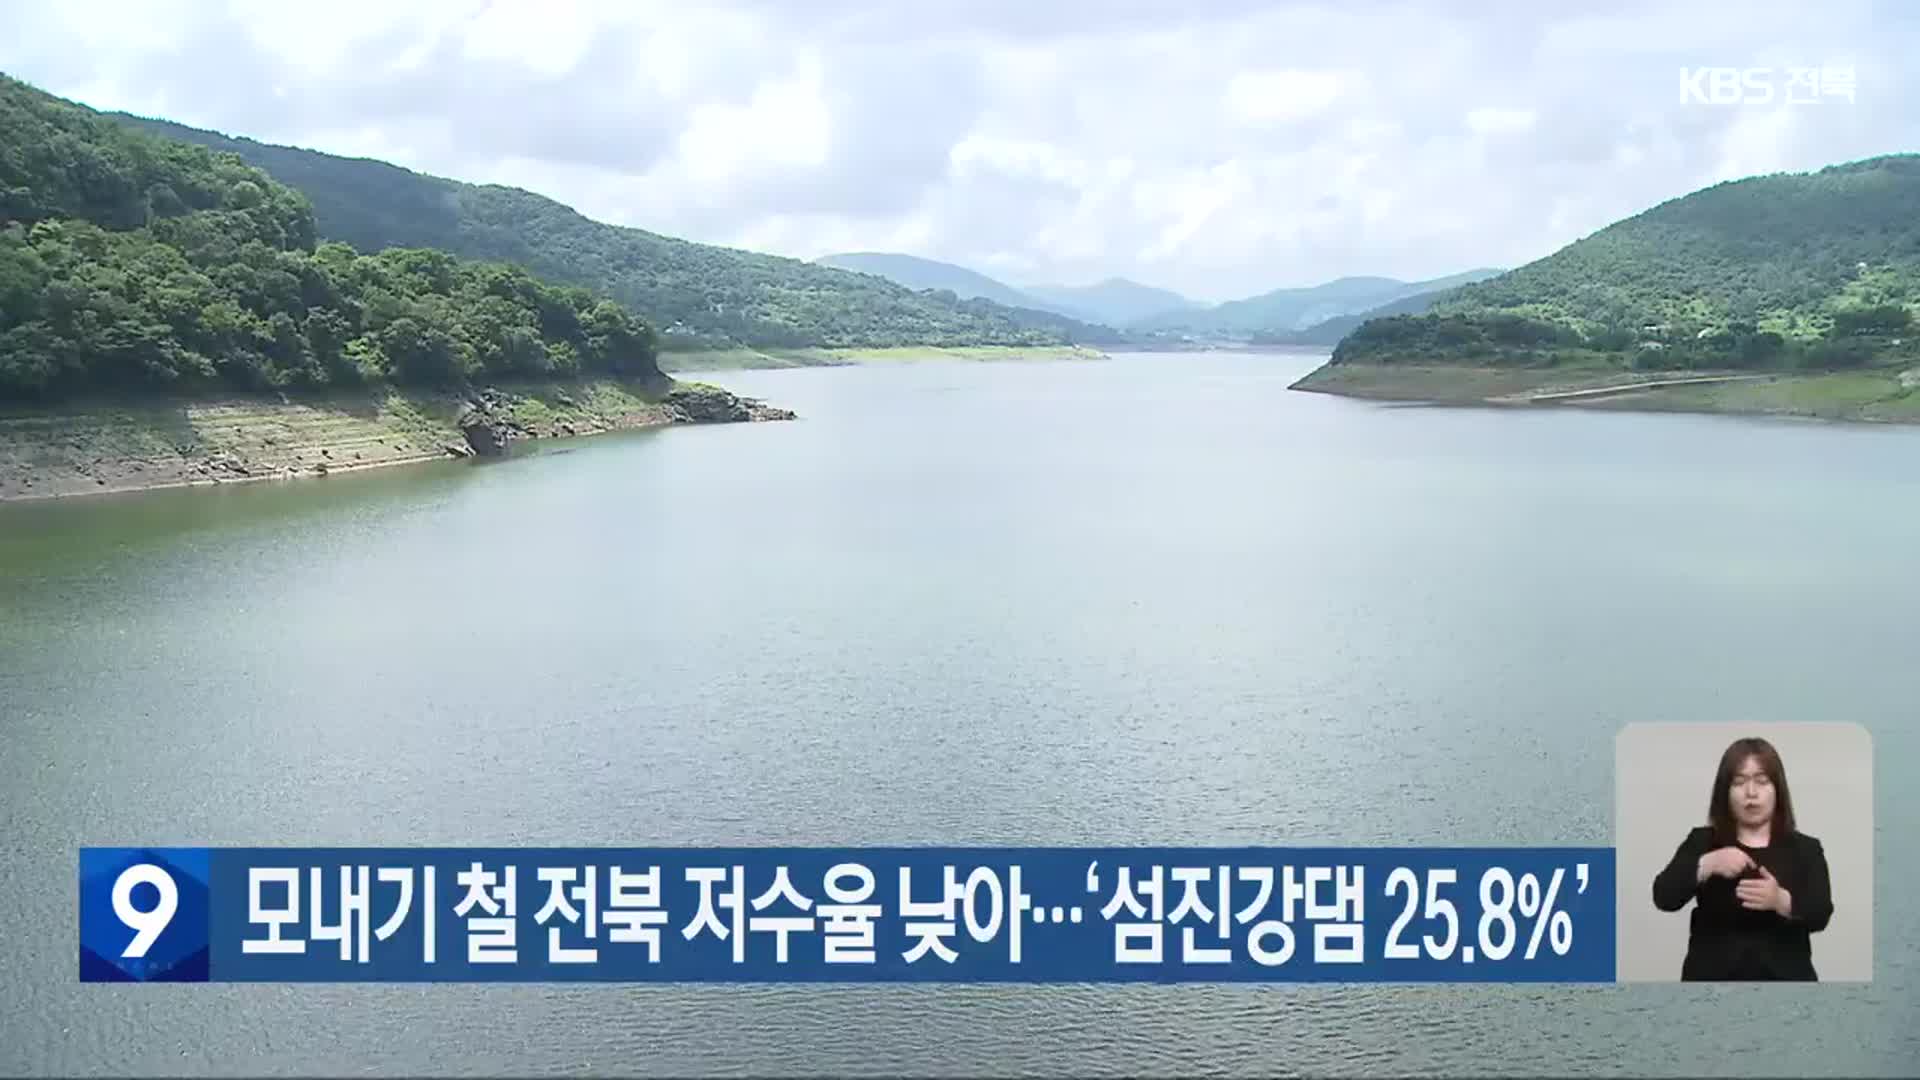 모내기 철 전북 저수율 낮아…‘섬진강댐 25.8%’